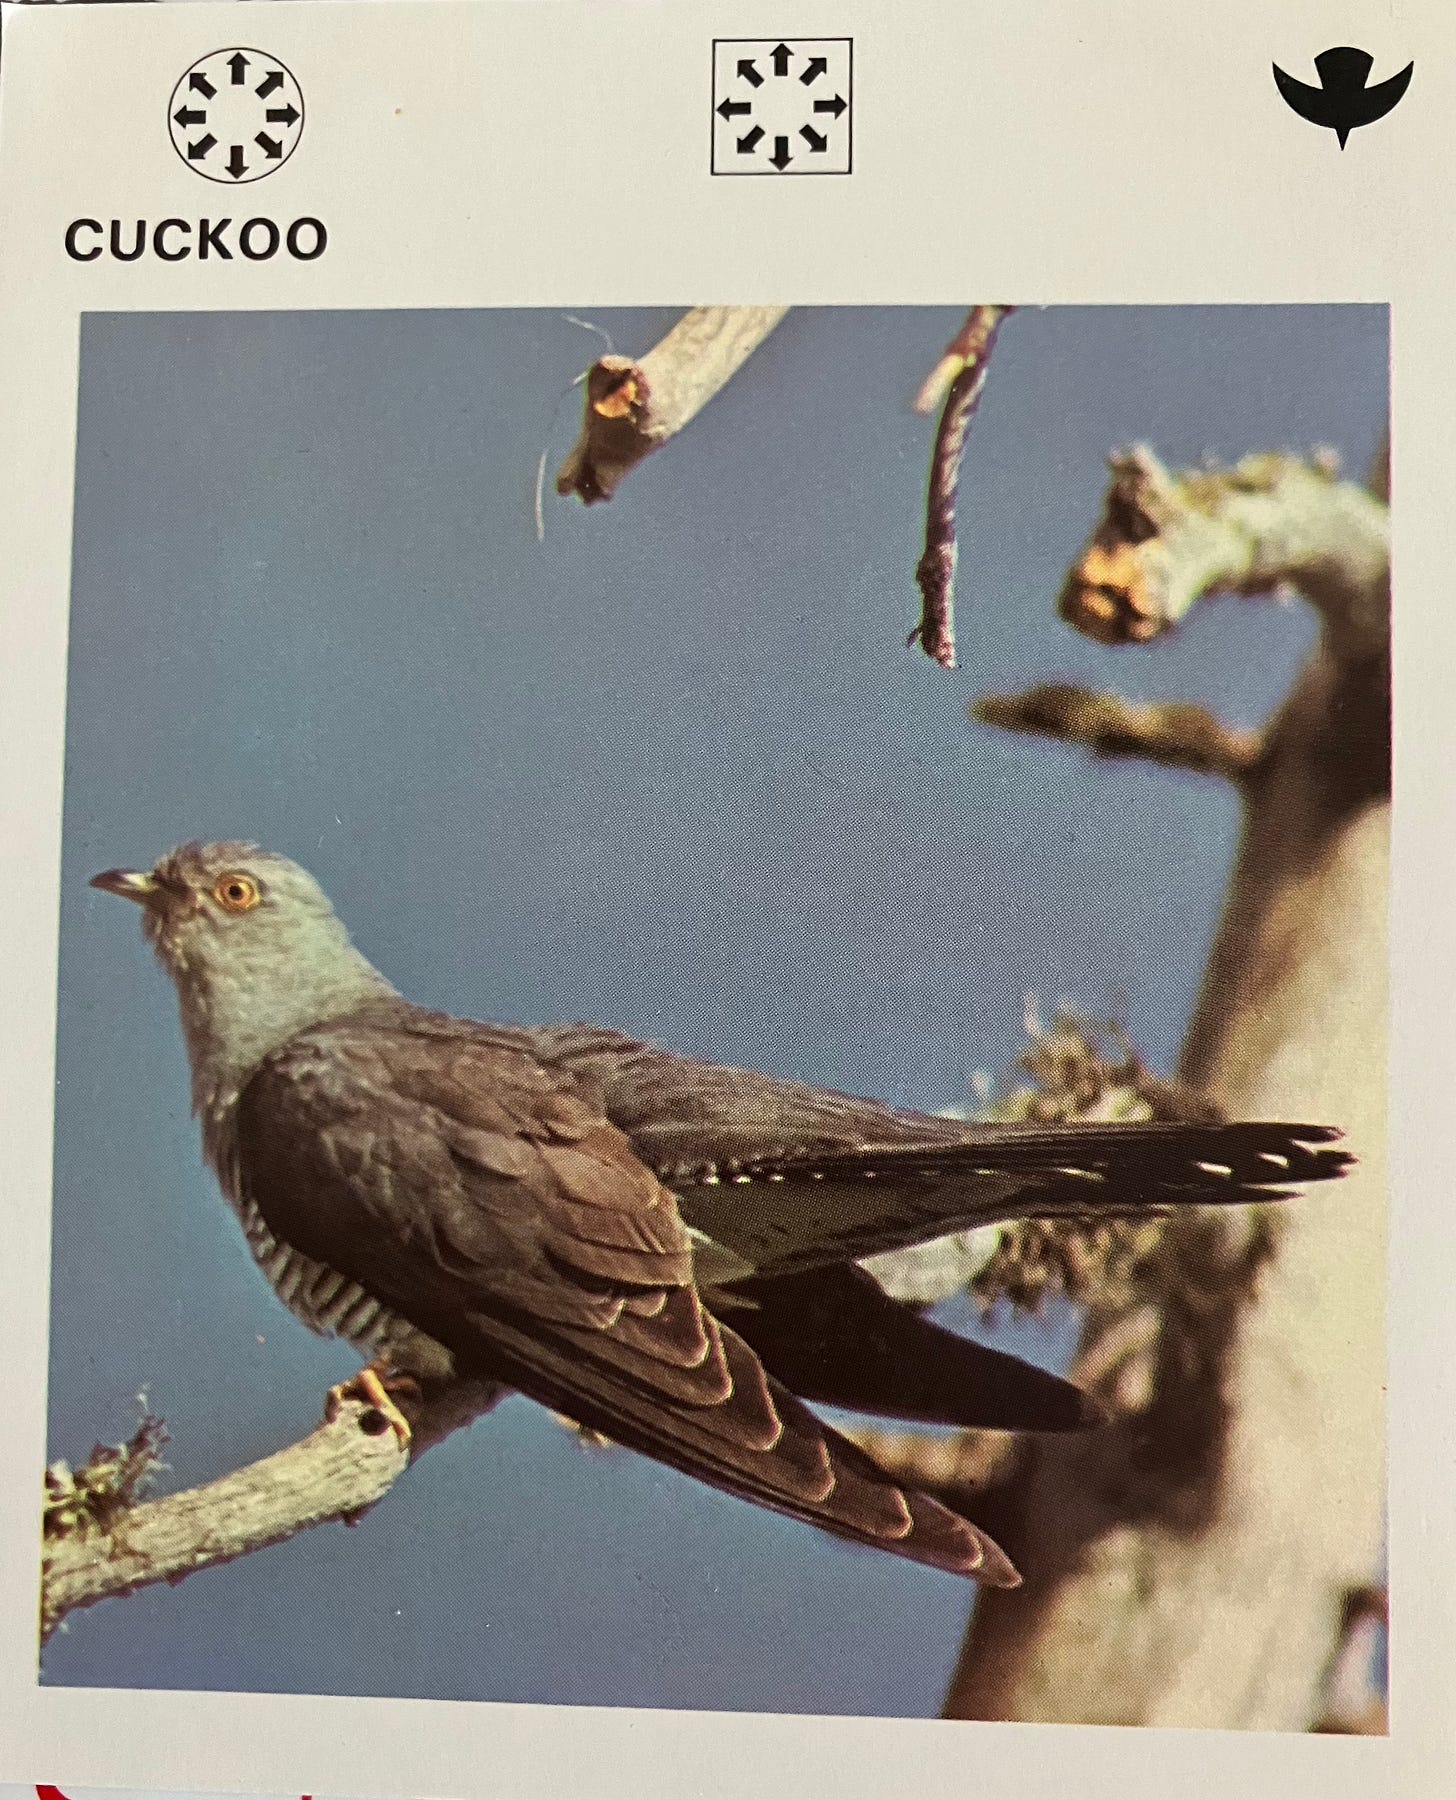 Wildlife card featuring cuckoo bird